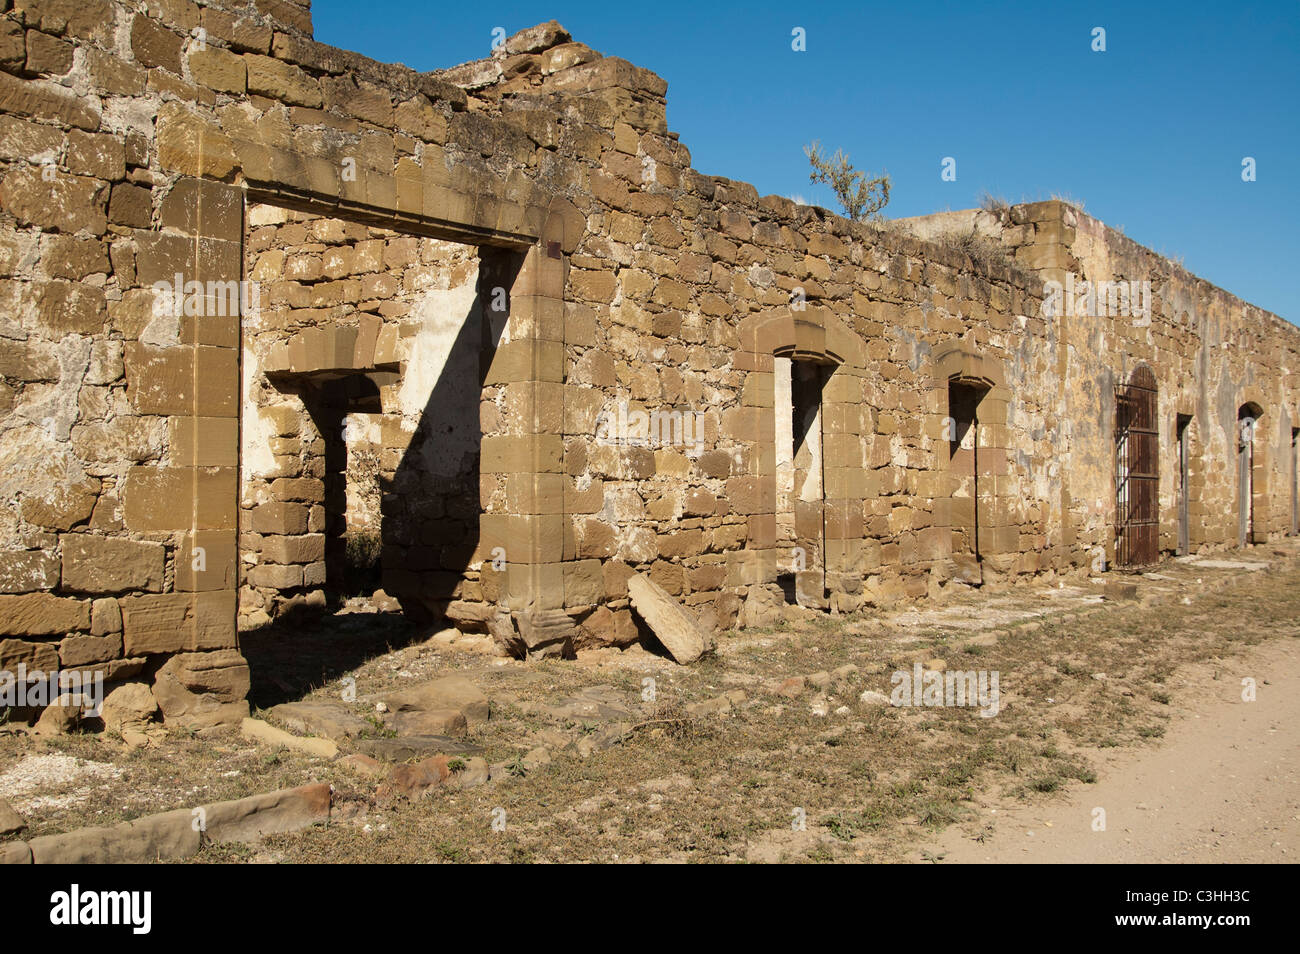 Ruins of sandstone architecture in Guerrero Viejo, Tamaulipas, Mexico. Stock Photo